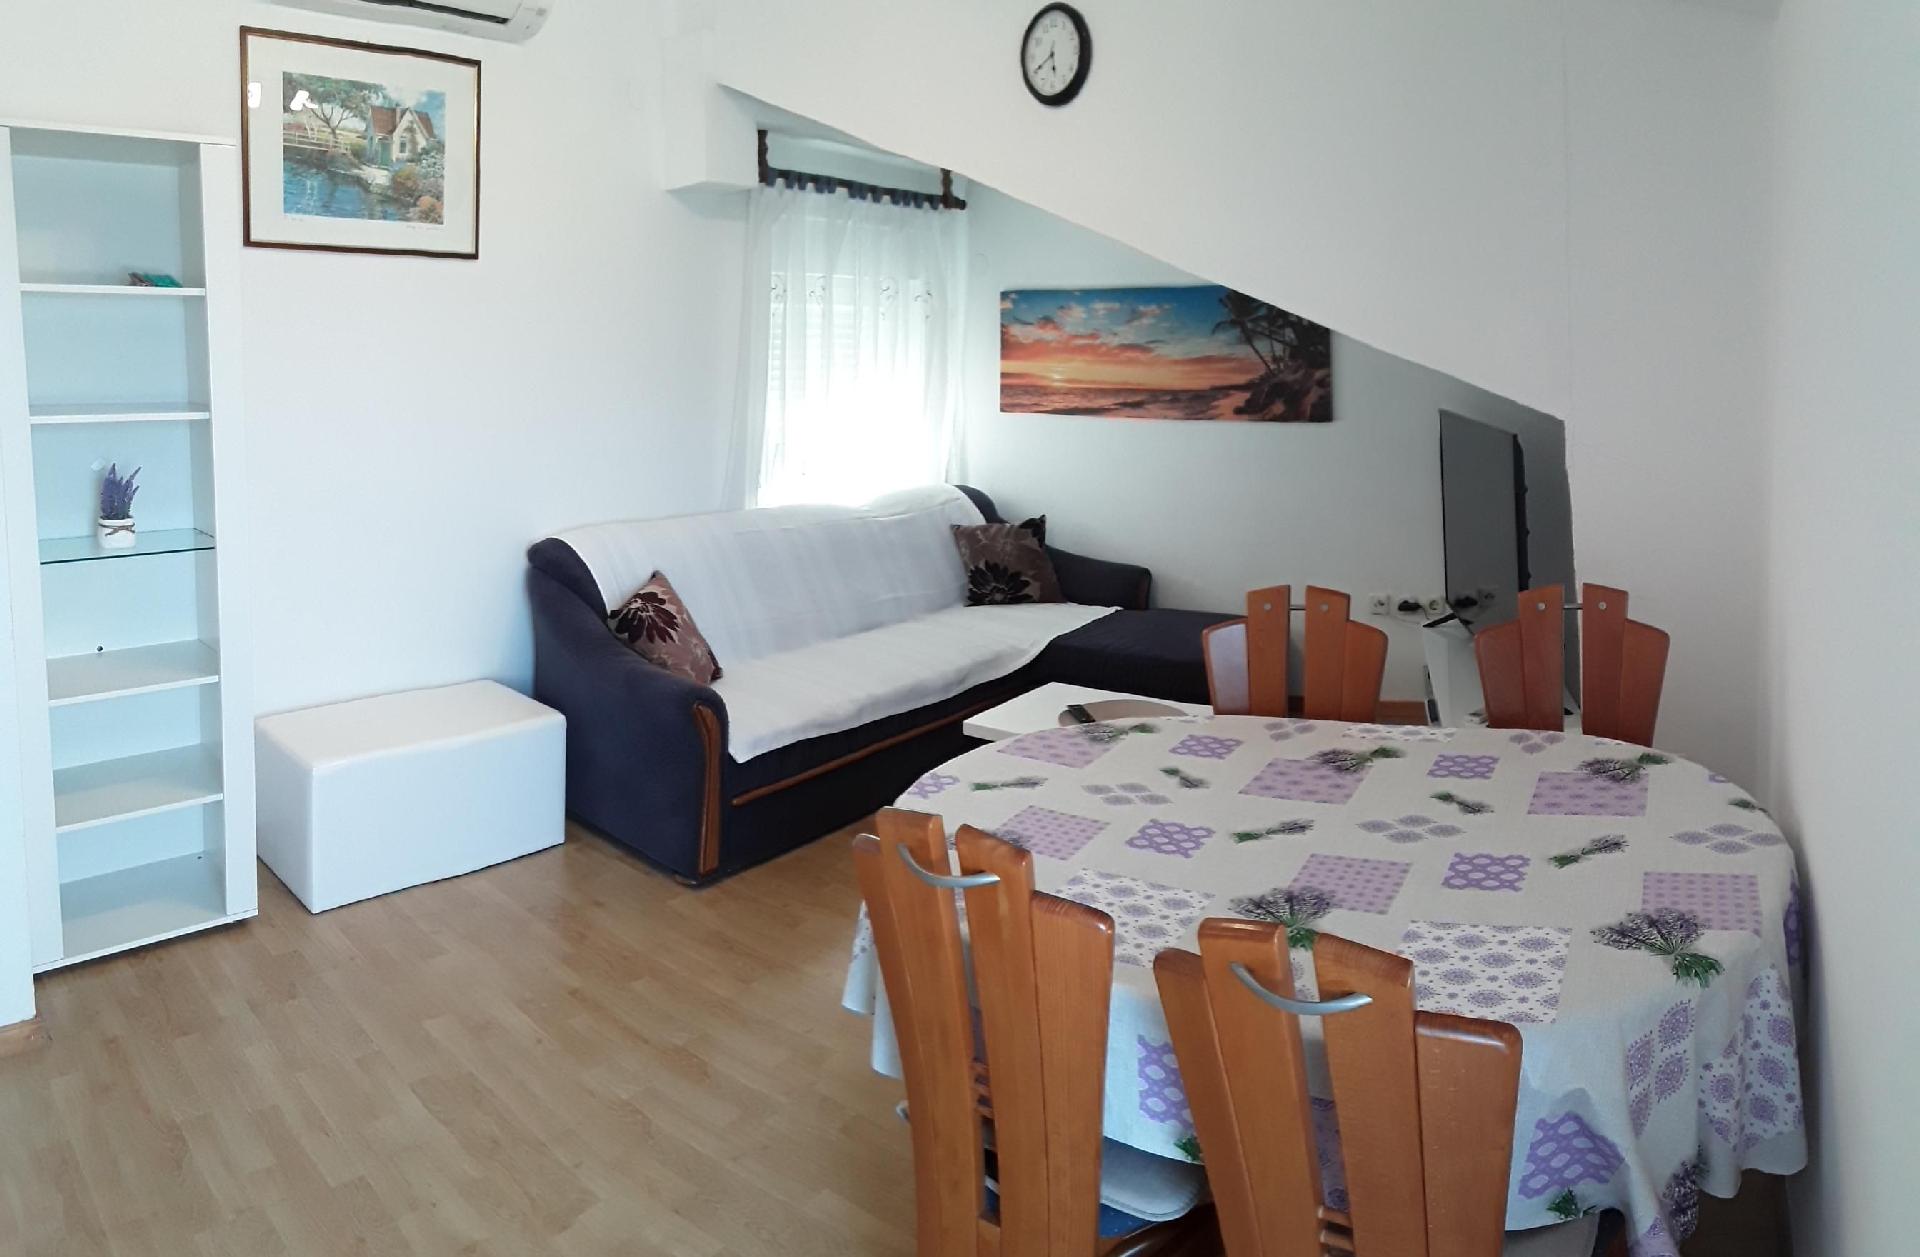 Ferienwohnung für 4 Personen ca. 58 m² i Ferienwohnung in Kroatien